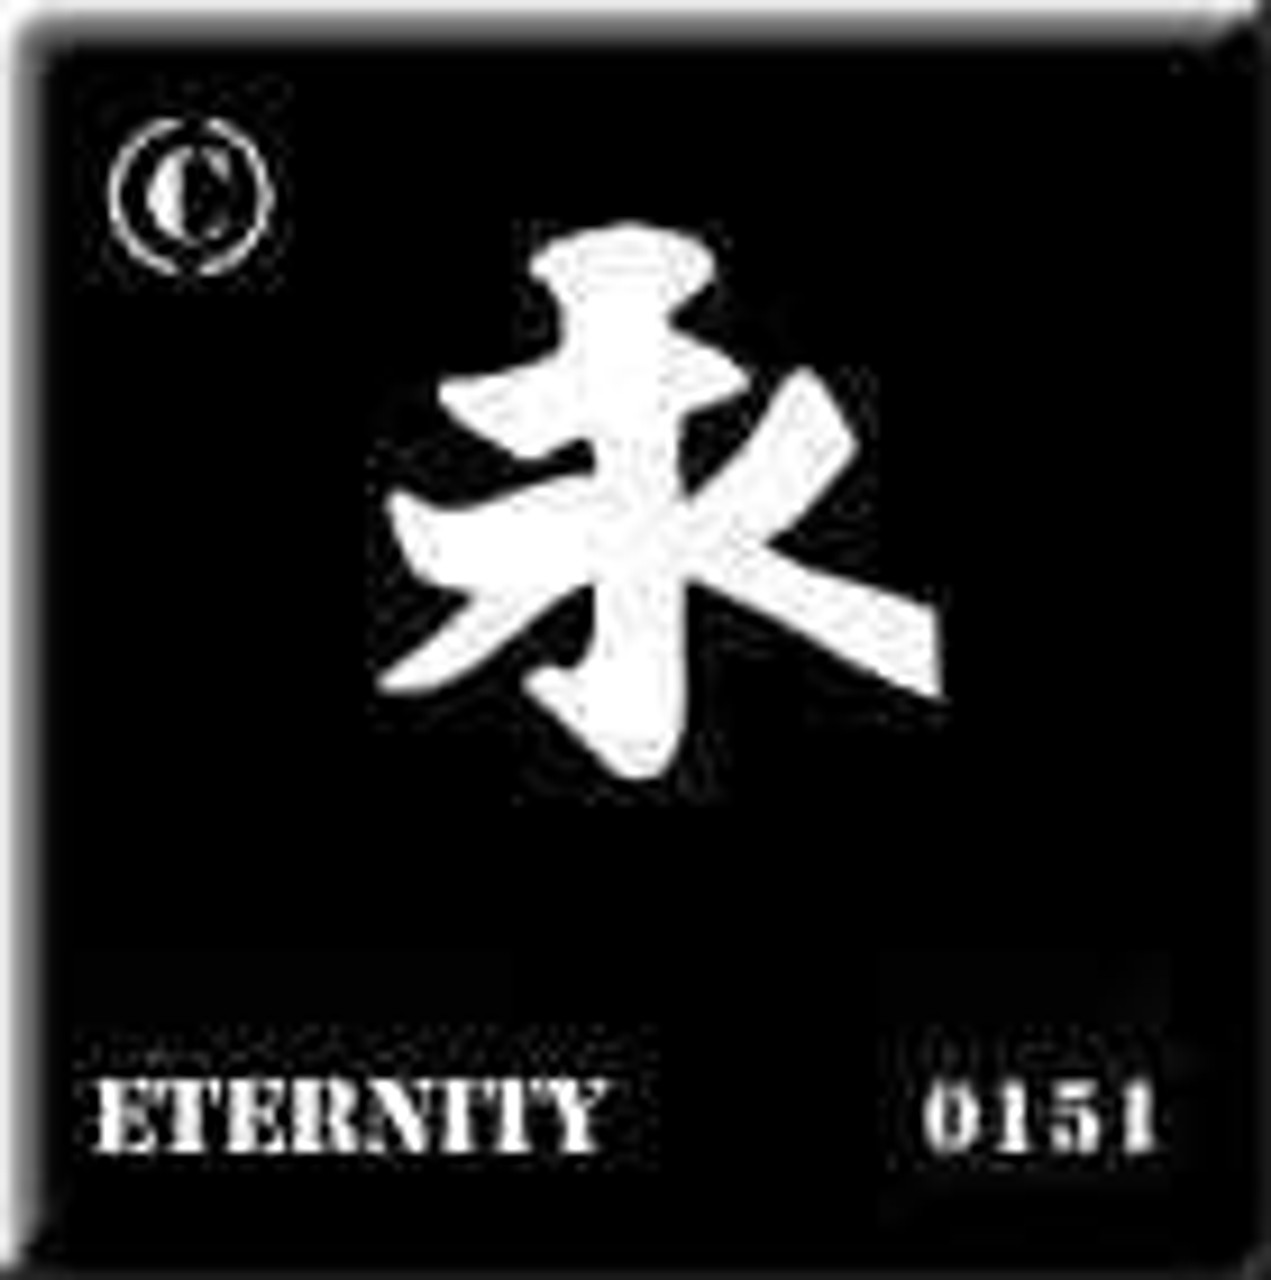 0151 Eternity